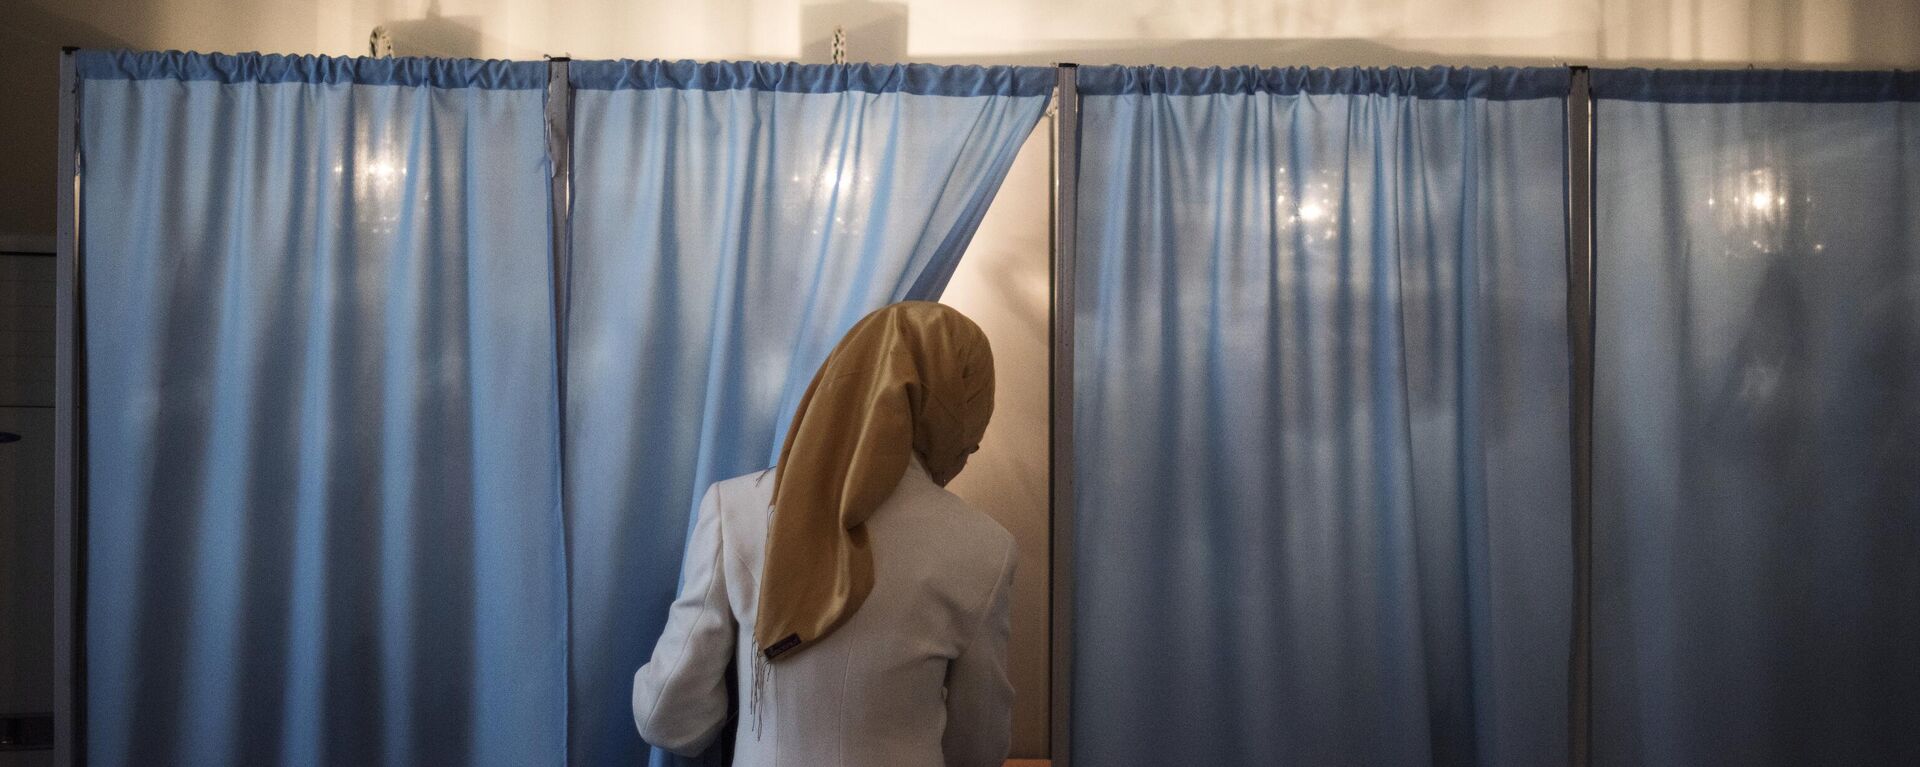 Женщина голосует на избирательном участке во время выборов президента Узбекистана. Архивное фото - Sputnik Узбекистан, 1920, 09.08.2021